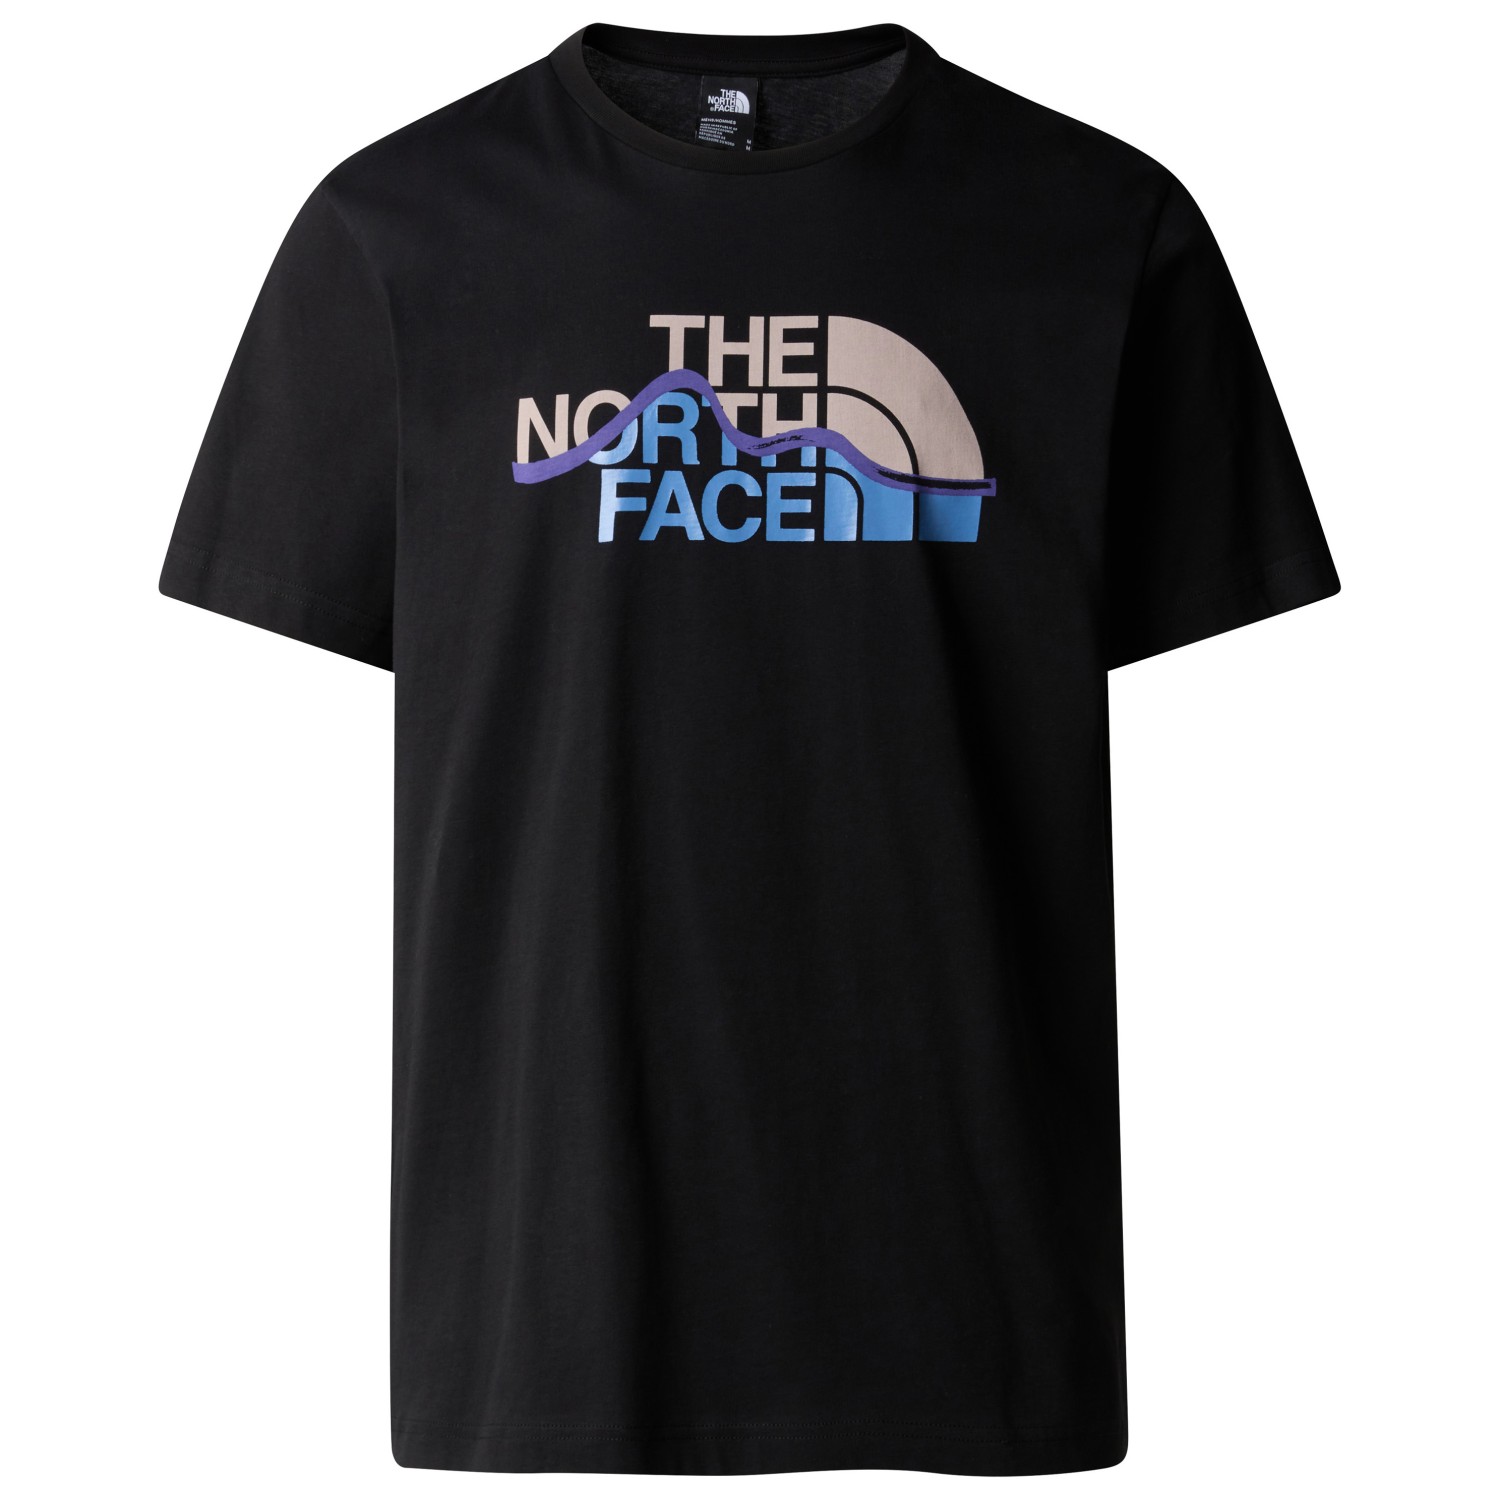 функциональная рубашка the north face women s flex circuit s s tee цвет tnf black Футболка The North Face S/S Mountain Line Tee, цвет TNF Black